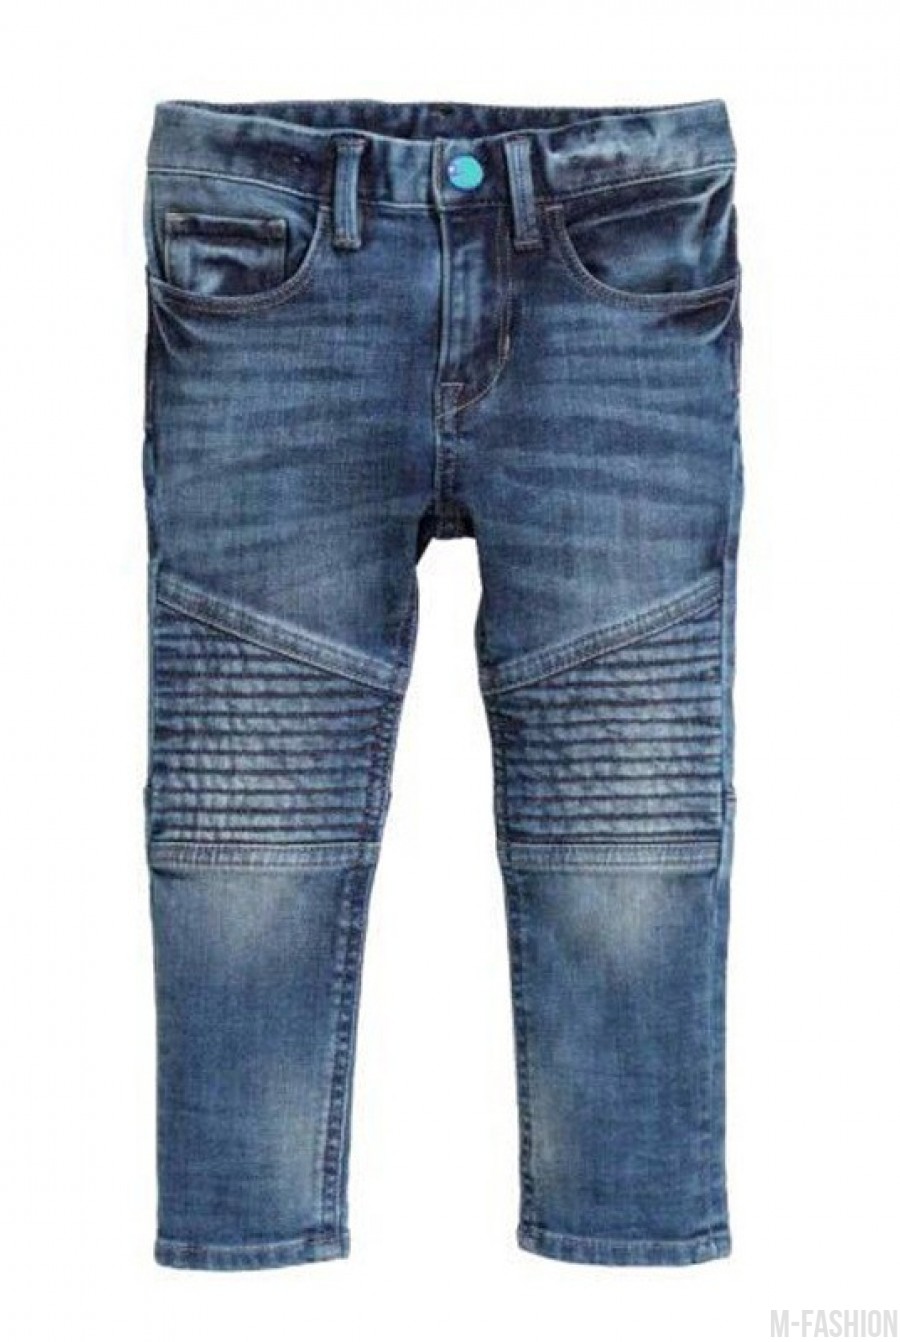 Потертые джинсы с прошитыми ассиметричными вставками на коленях - Фото 1